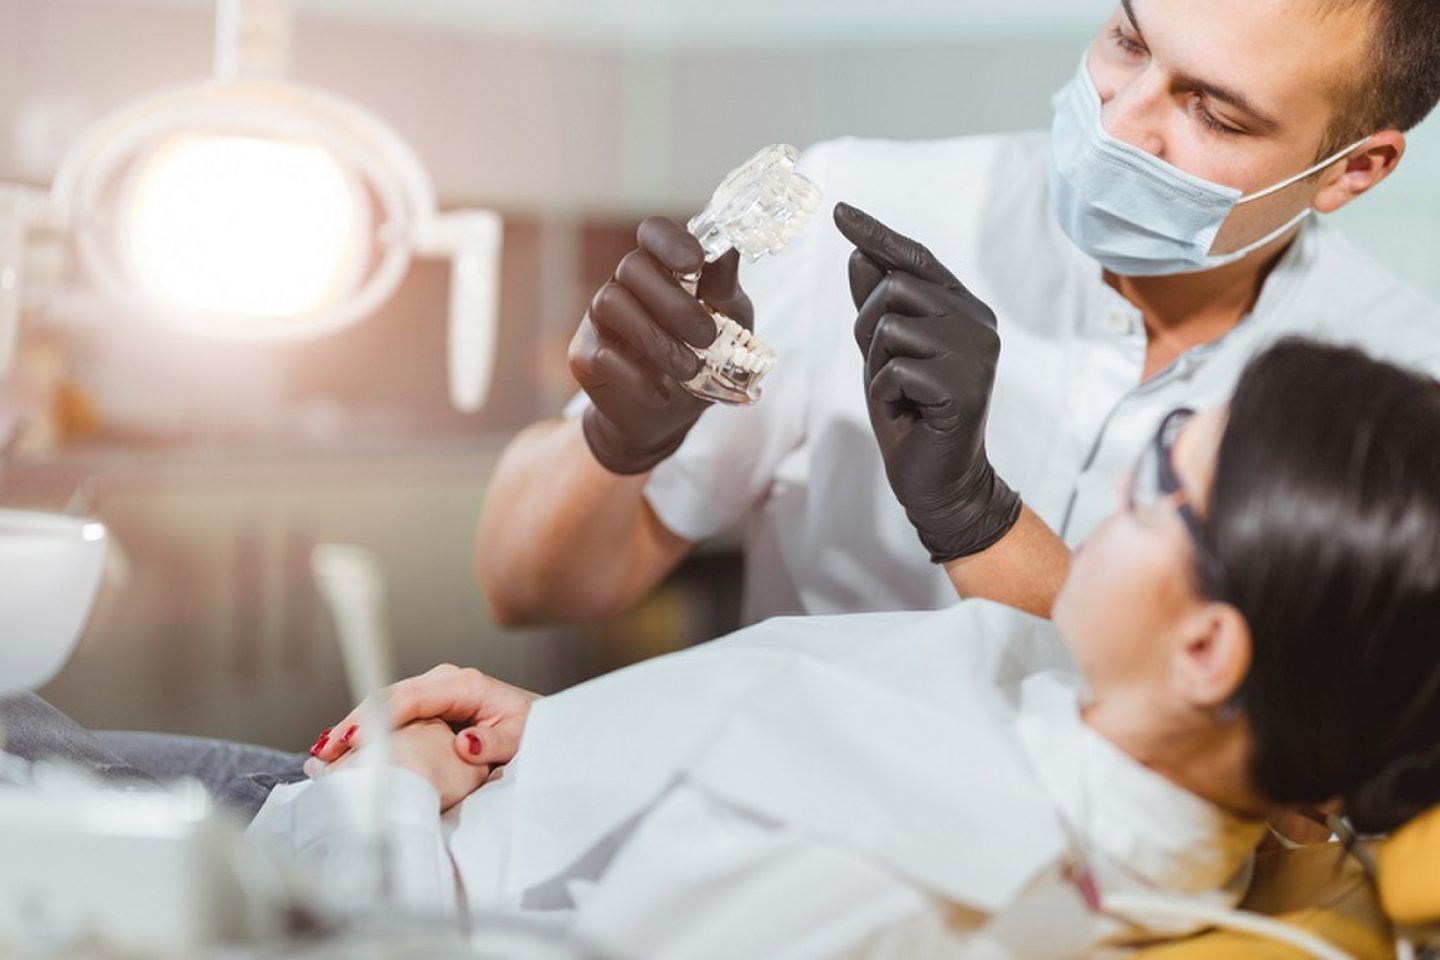 مرض رئوي غامض يصيب أطباء الأسنان